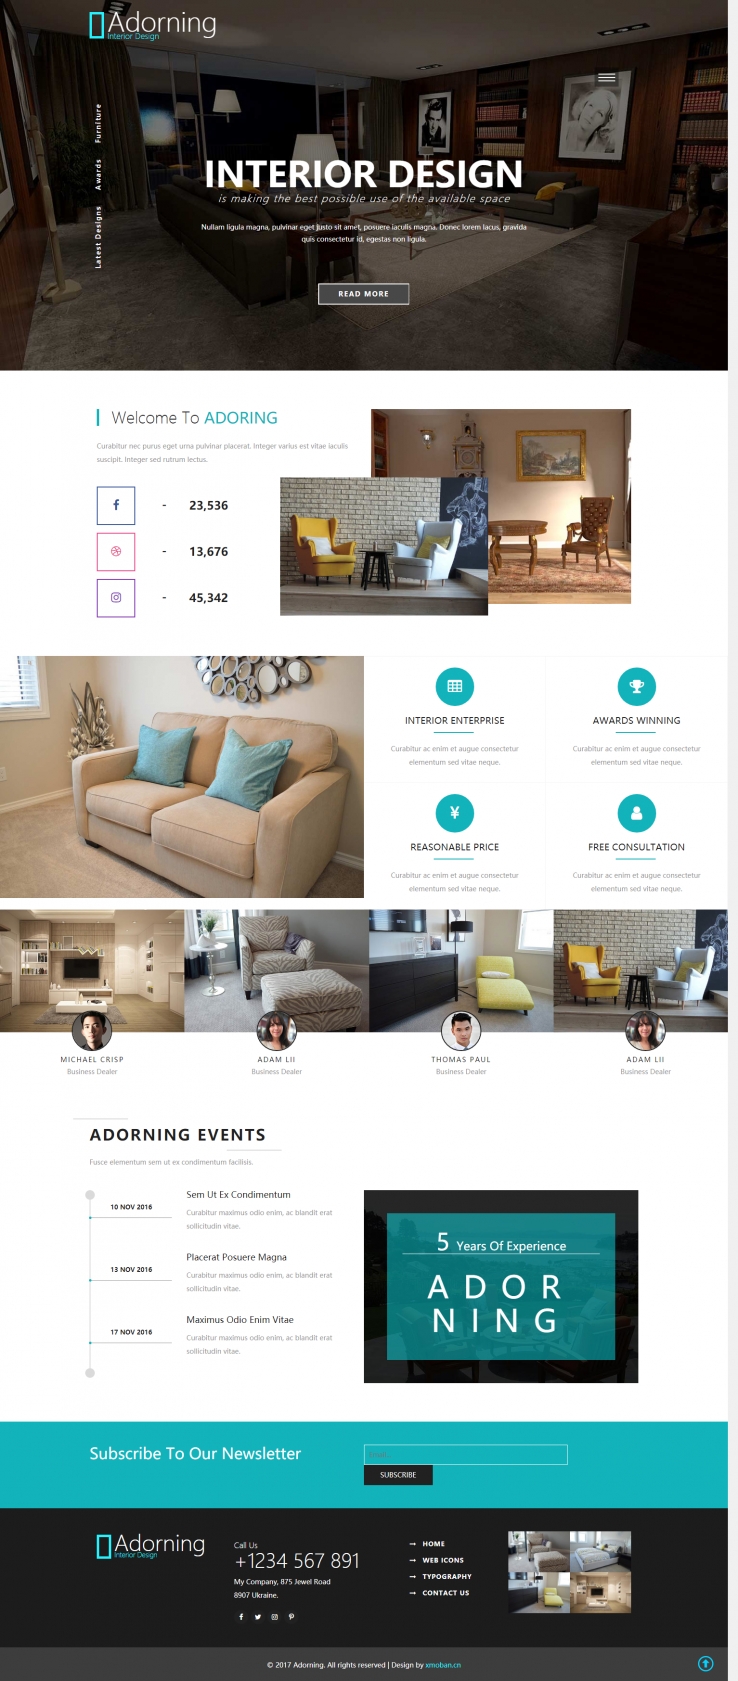 蓝色简洁风格的室内家具设计企业网站源码下载